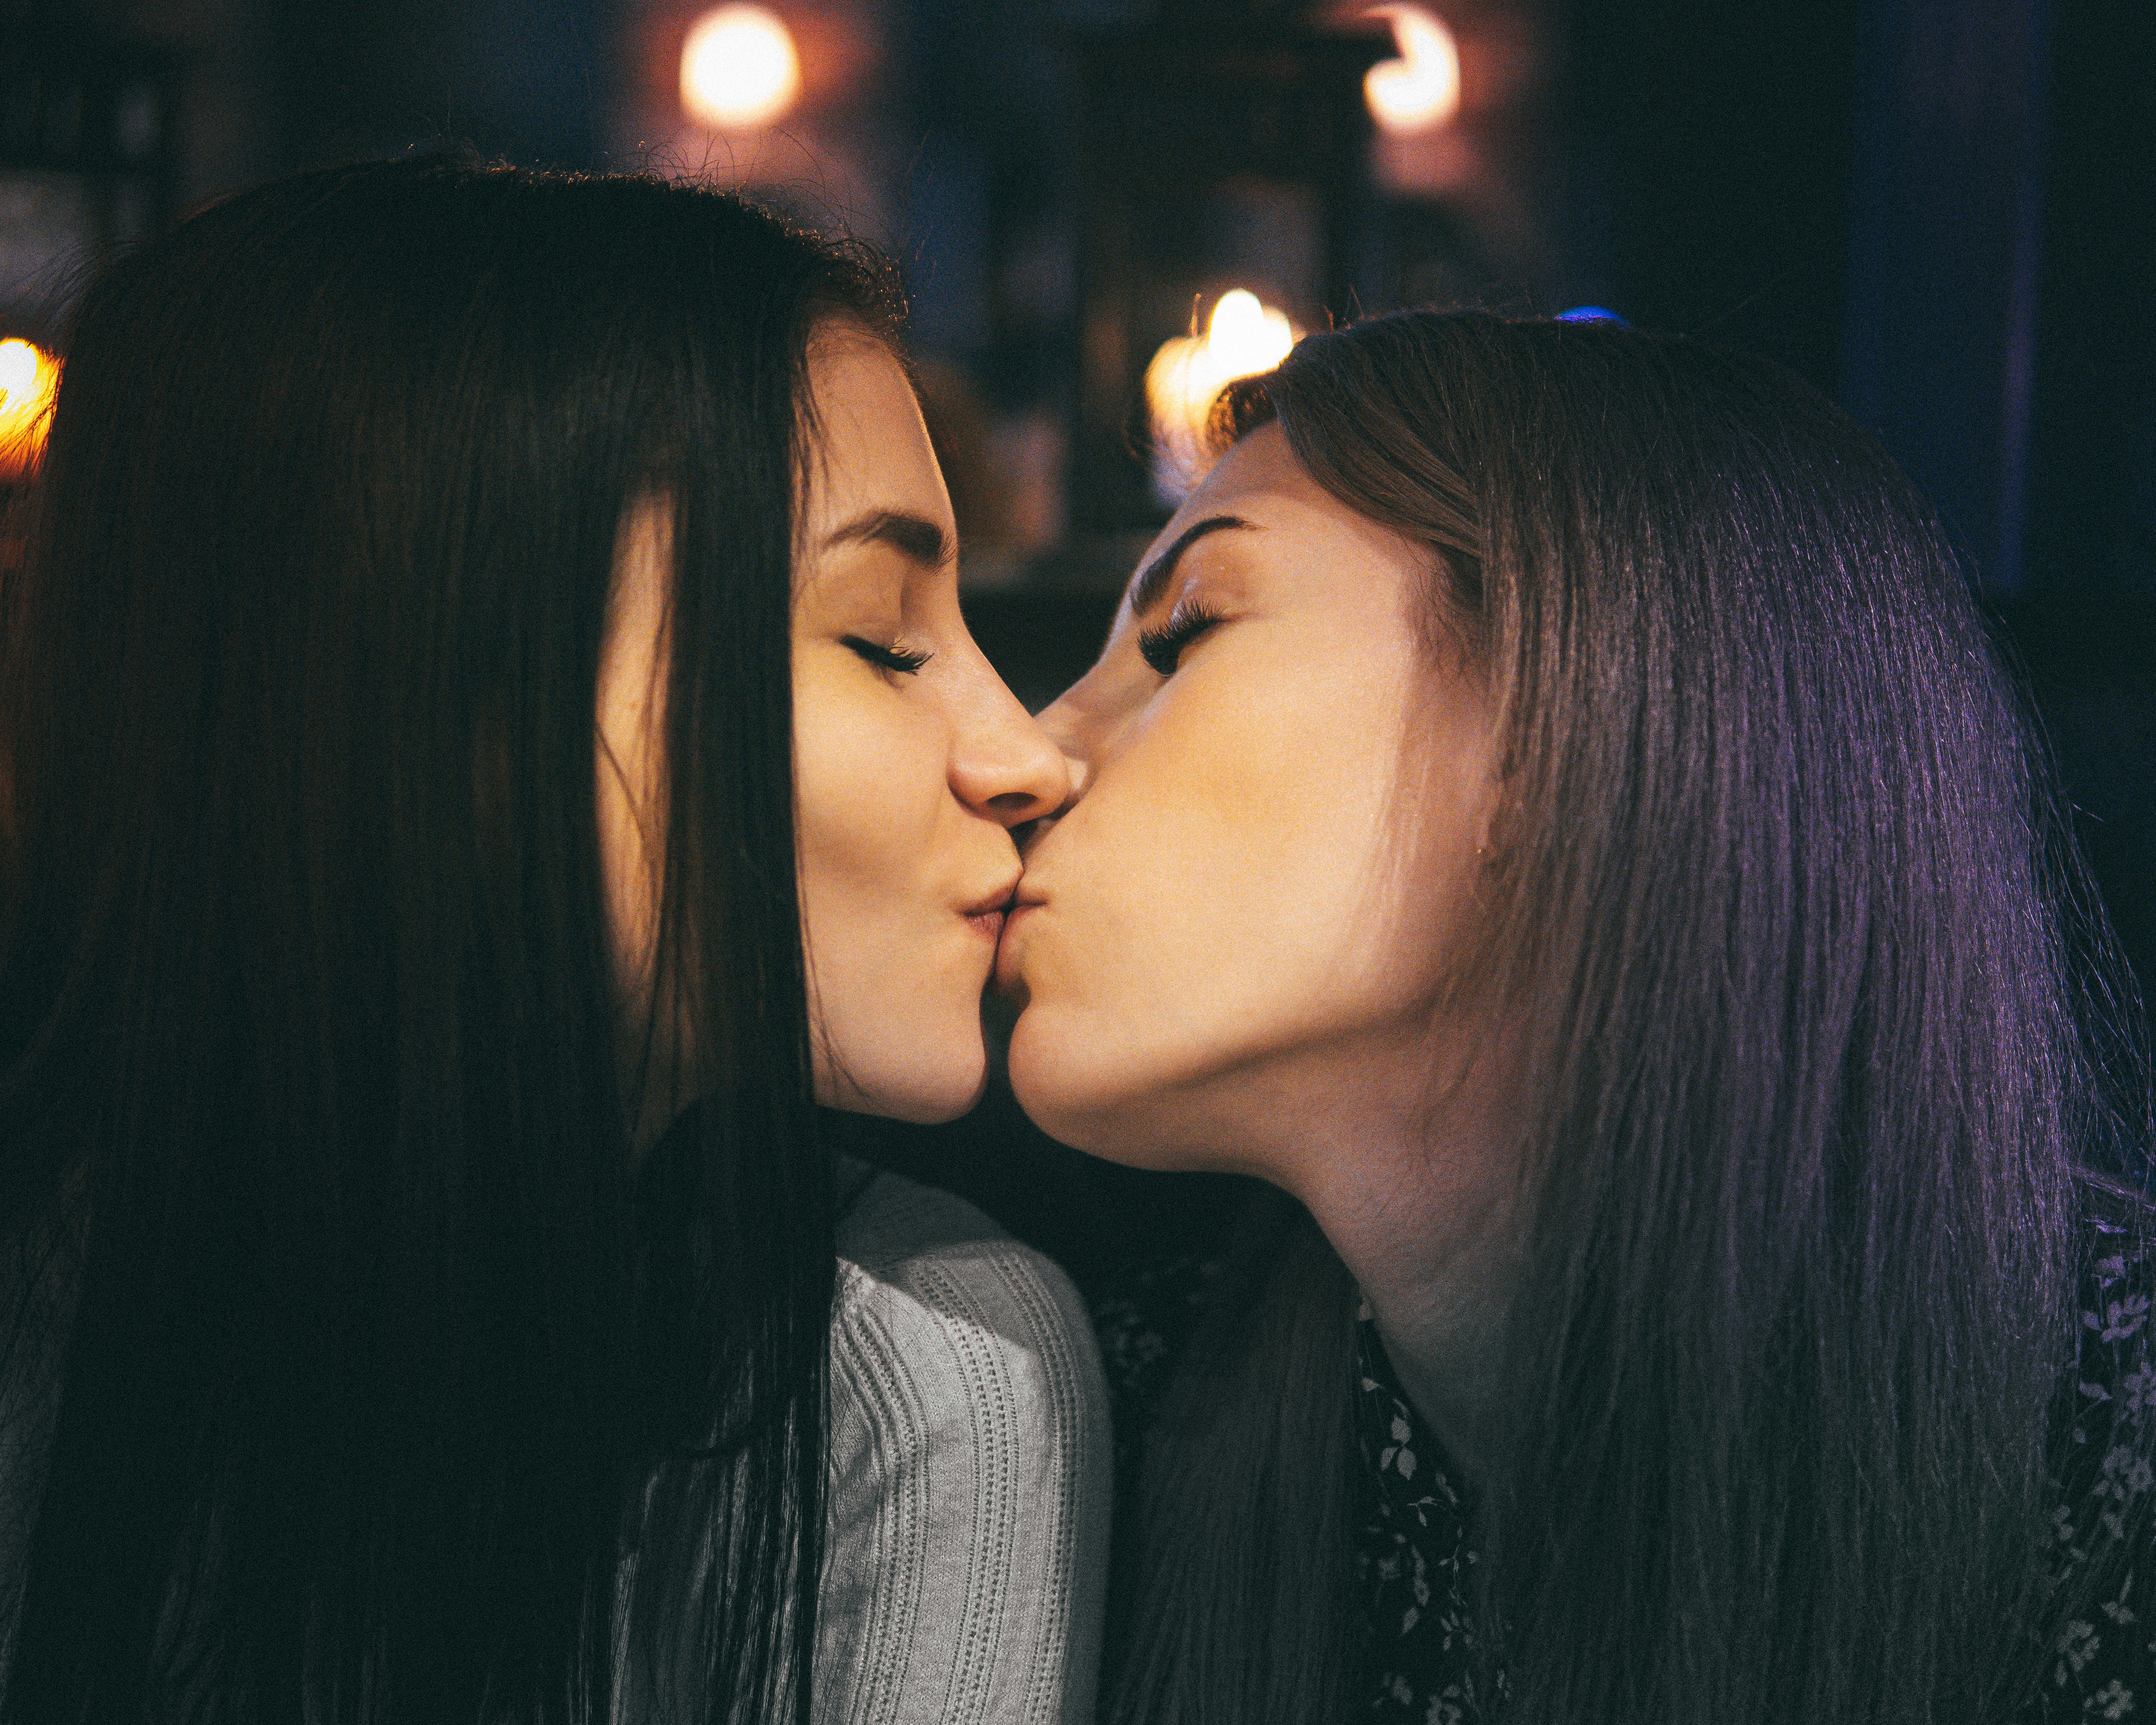 Лесбиянки поцелую нежно. Поцелуй девушек. Поцелуй двух девушек. Красивый лесбийский поцелуй. Девушка целует девушку.